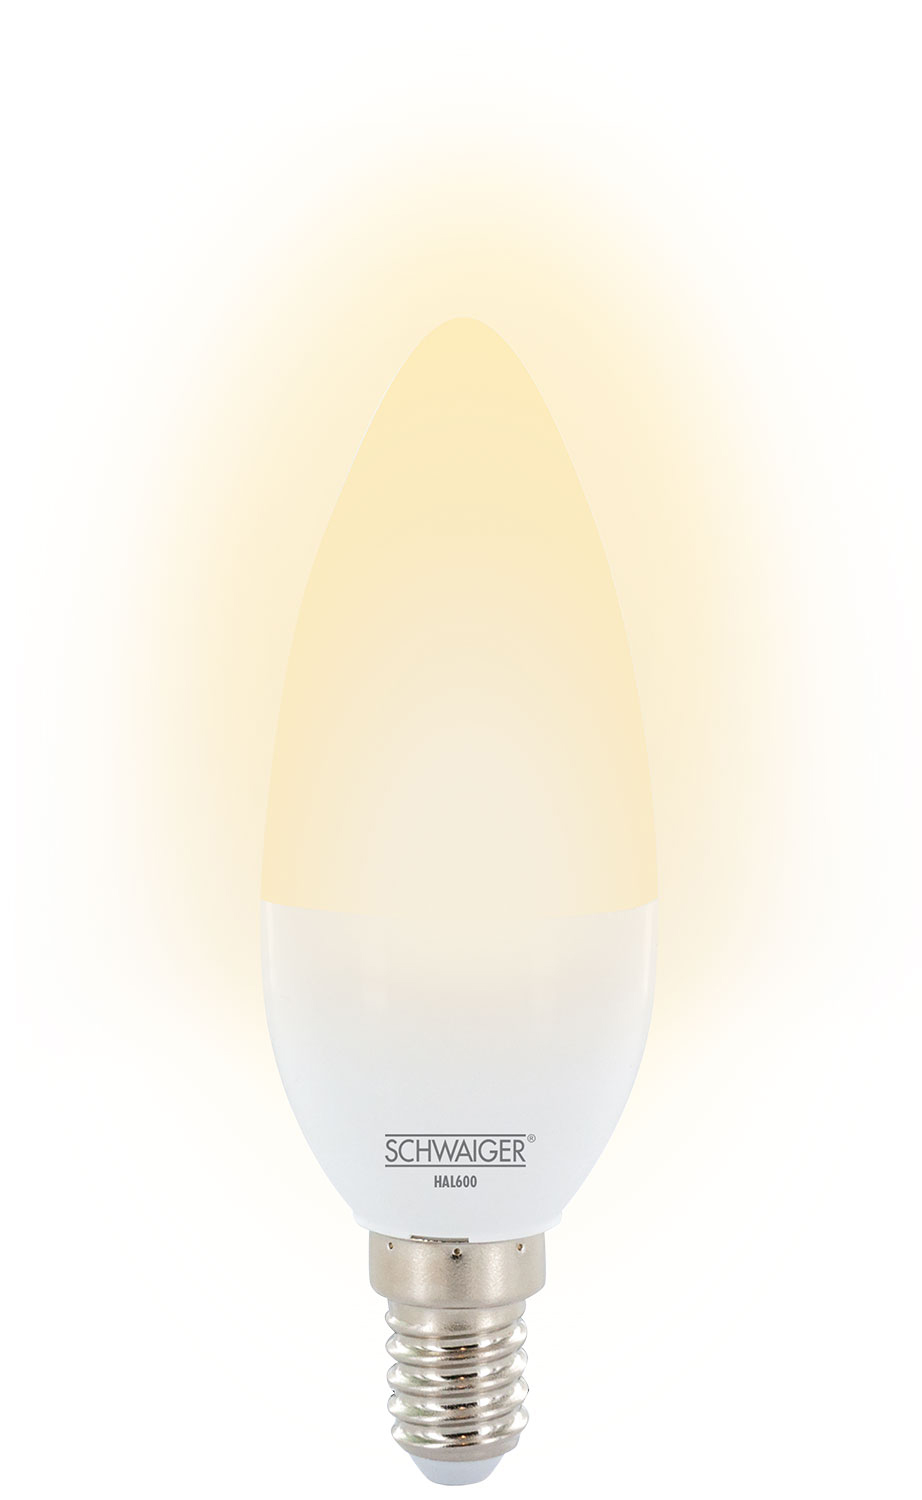 SCHWAIGER -HAL600- LED Leuchtmittel als (E14) dimmbares Wohnlicht Warmweiß